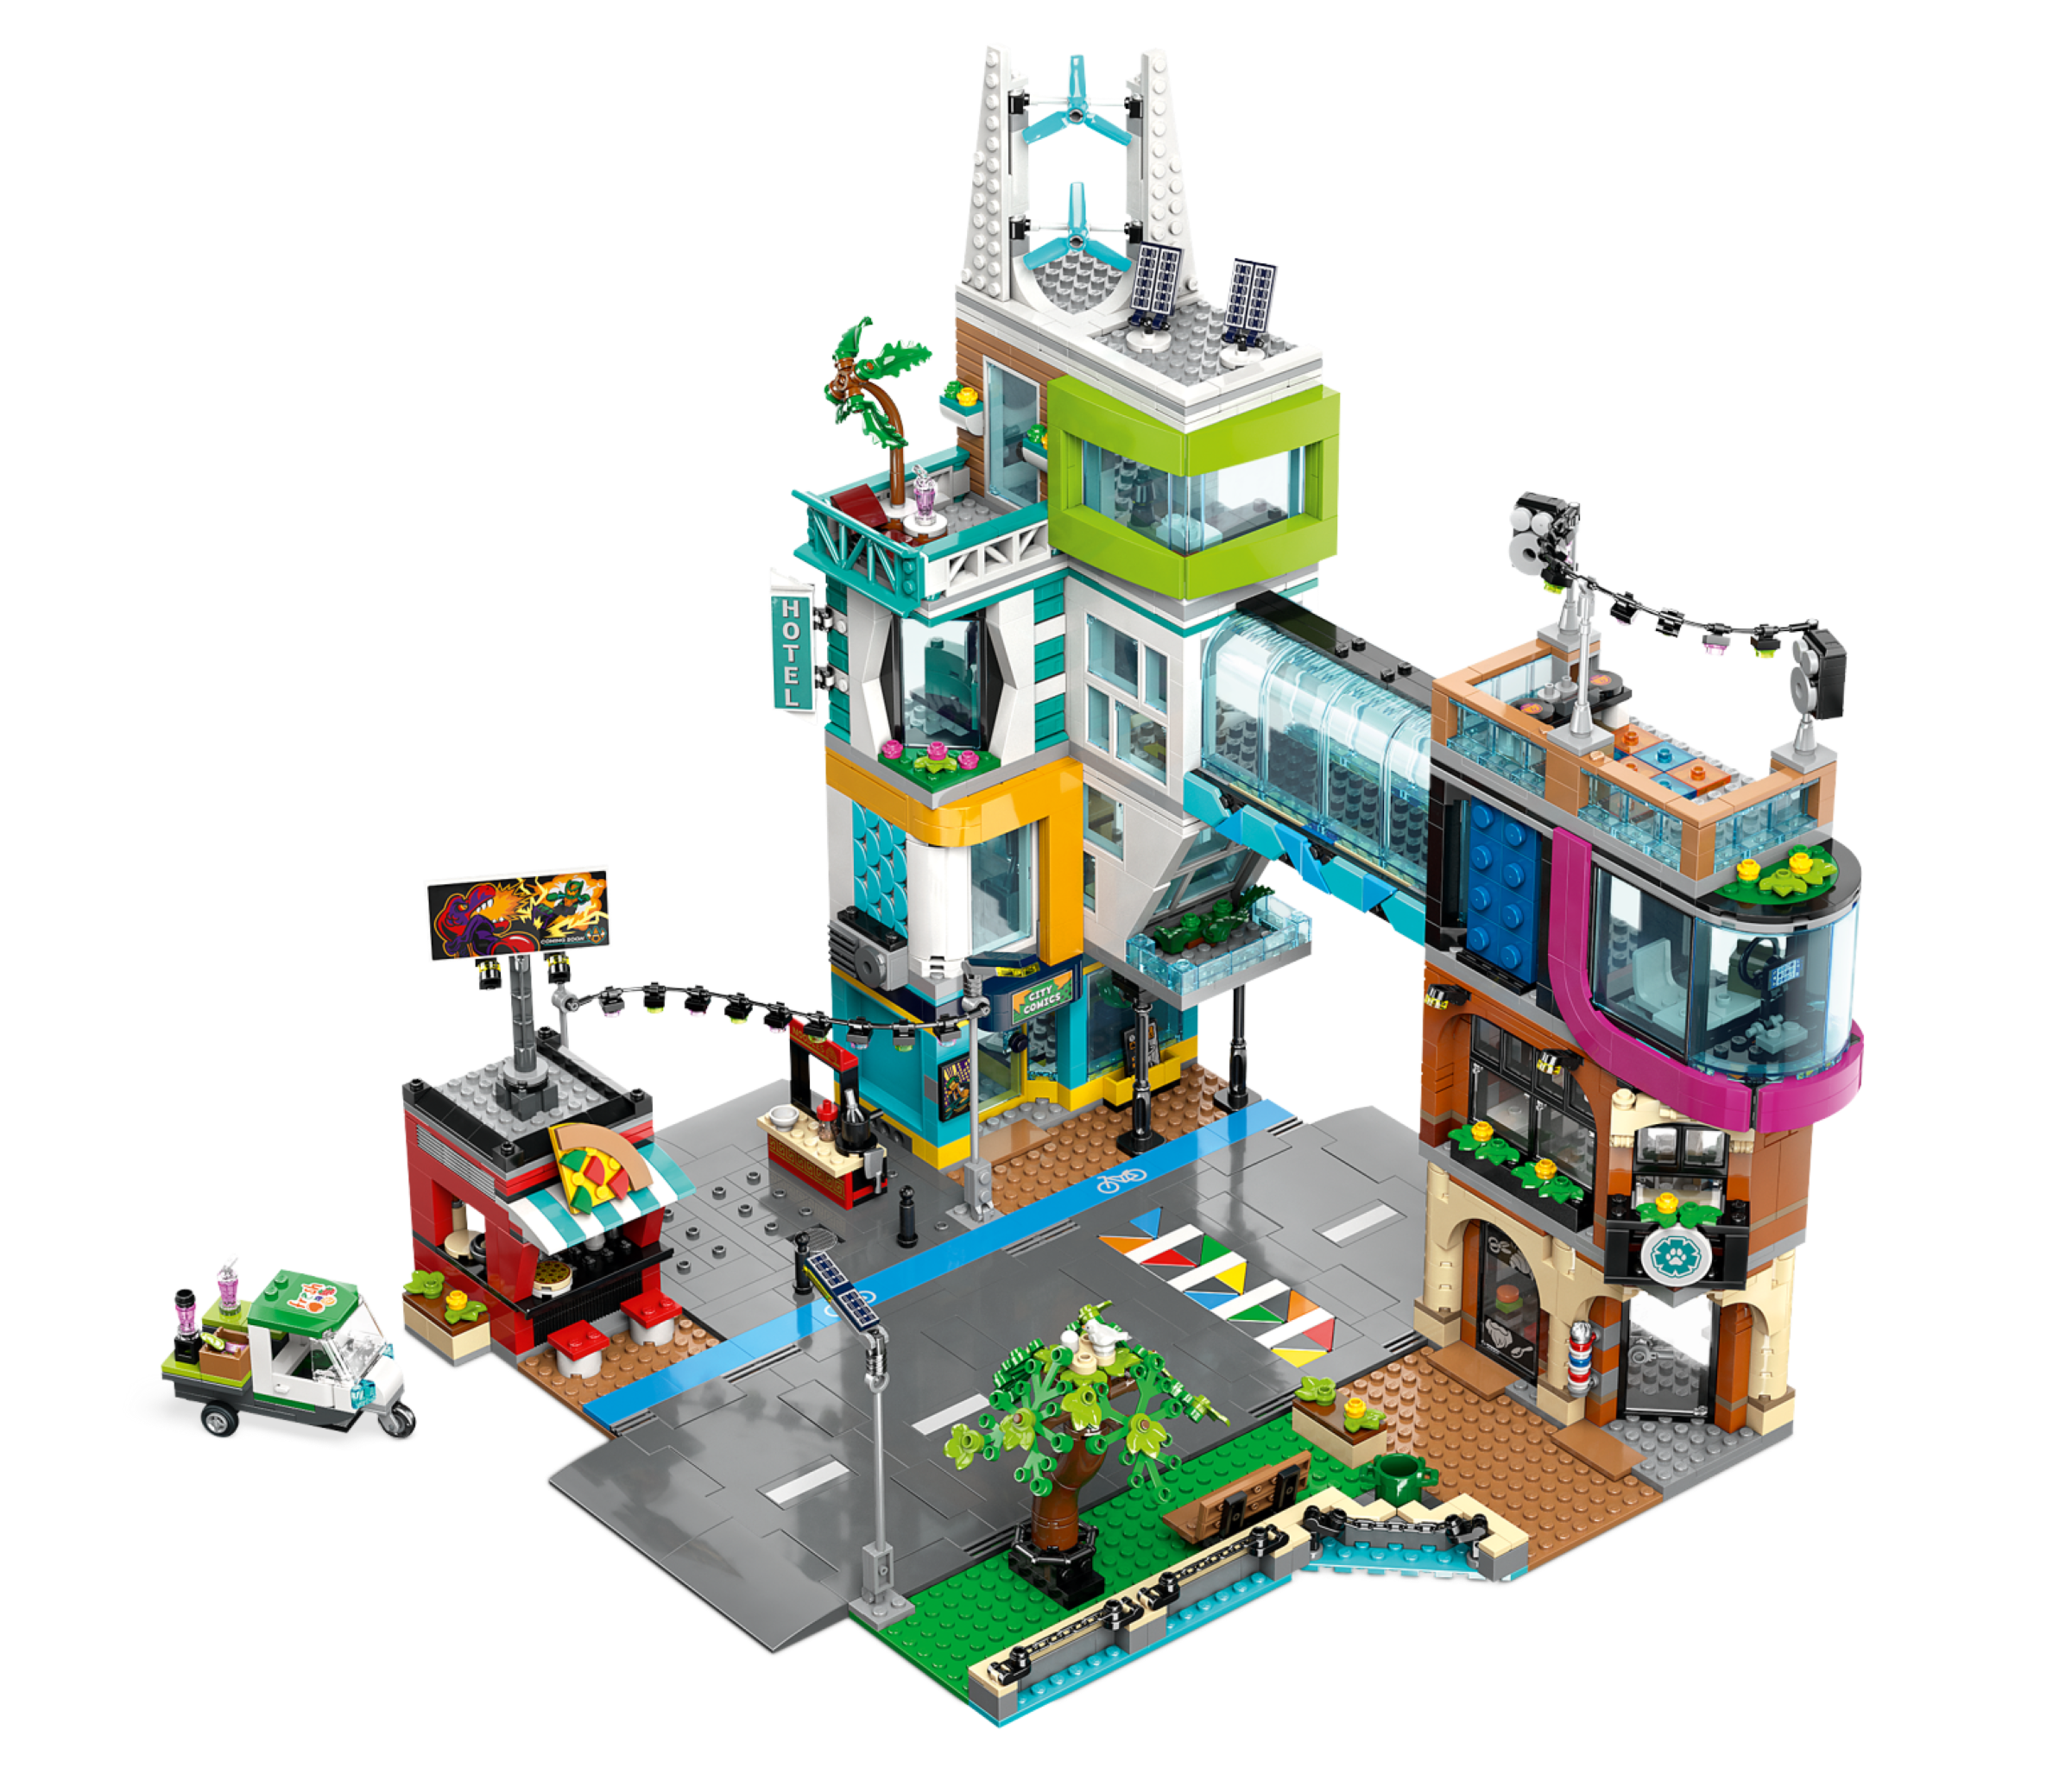 LEGO City Le centre-ville 60380 Ensemble de jeu de construction (2 010  pièces) 